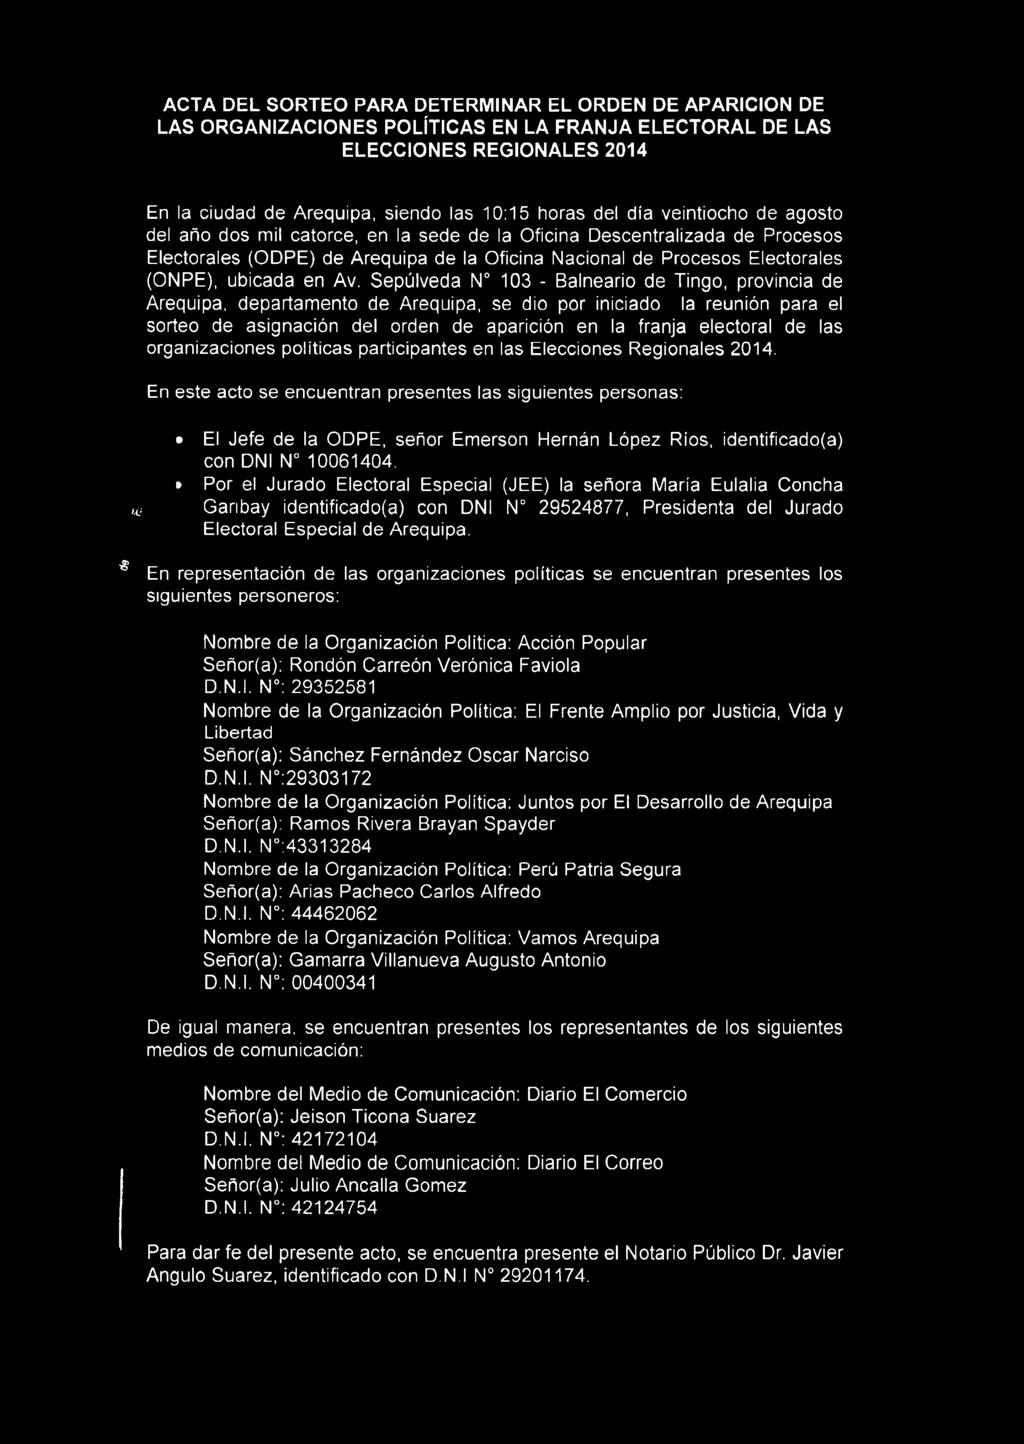 Sepúlveda N 103 - Balneario de Tingo, provincia de Arequipa, departamento de Arequipa, se dio por iniciado la reunión para el sorteo de asignación del orden de aparición en la franja electoral de las